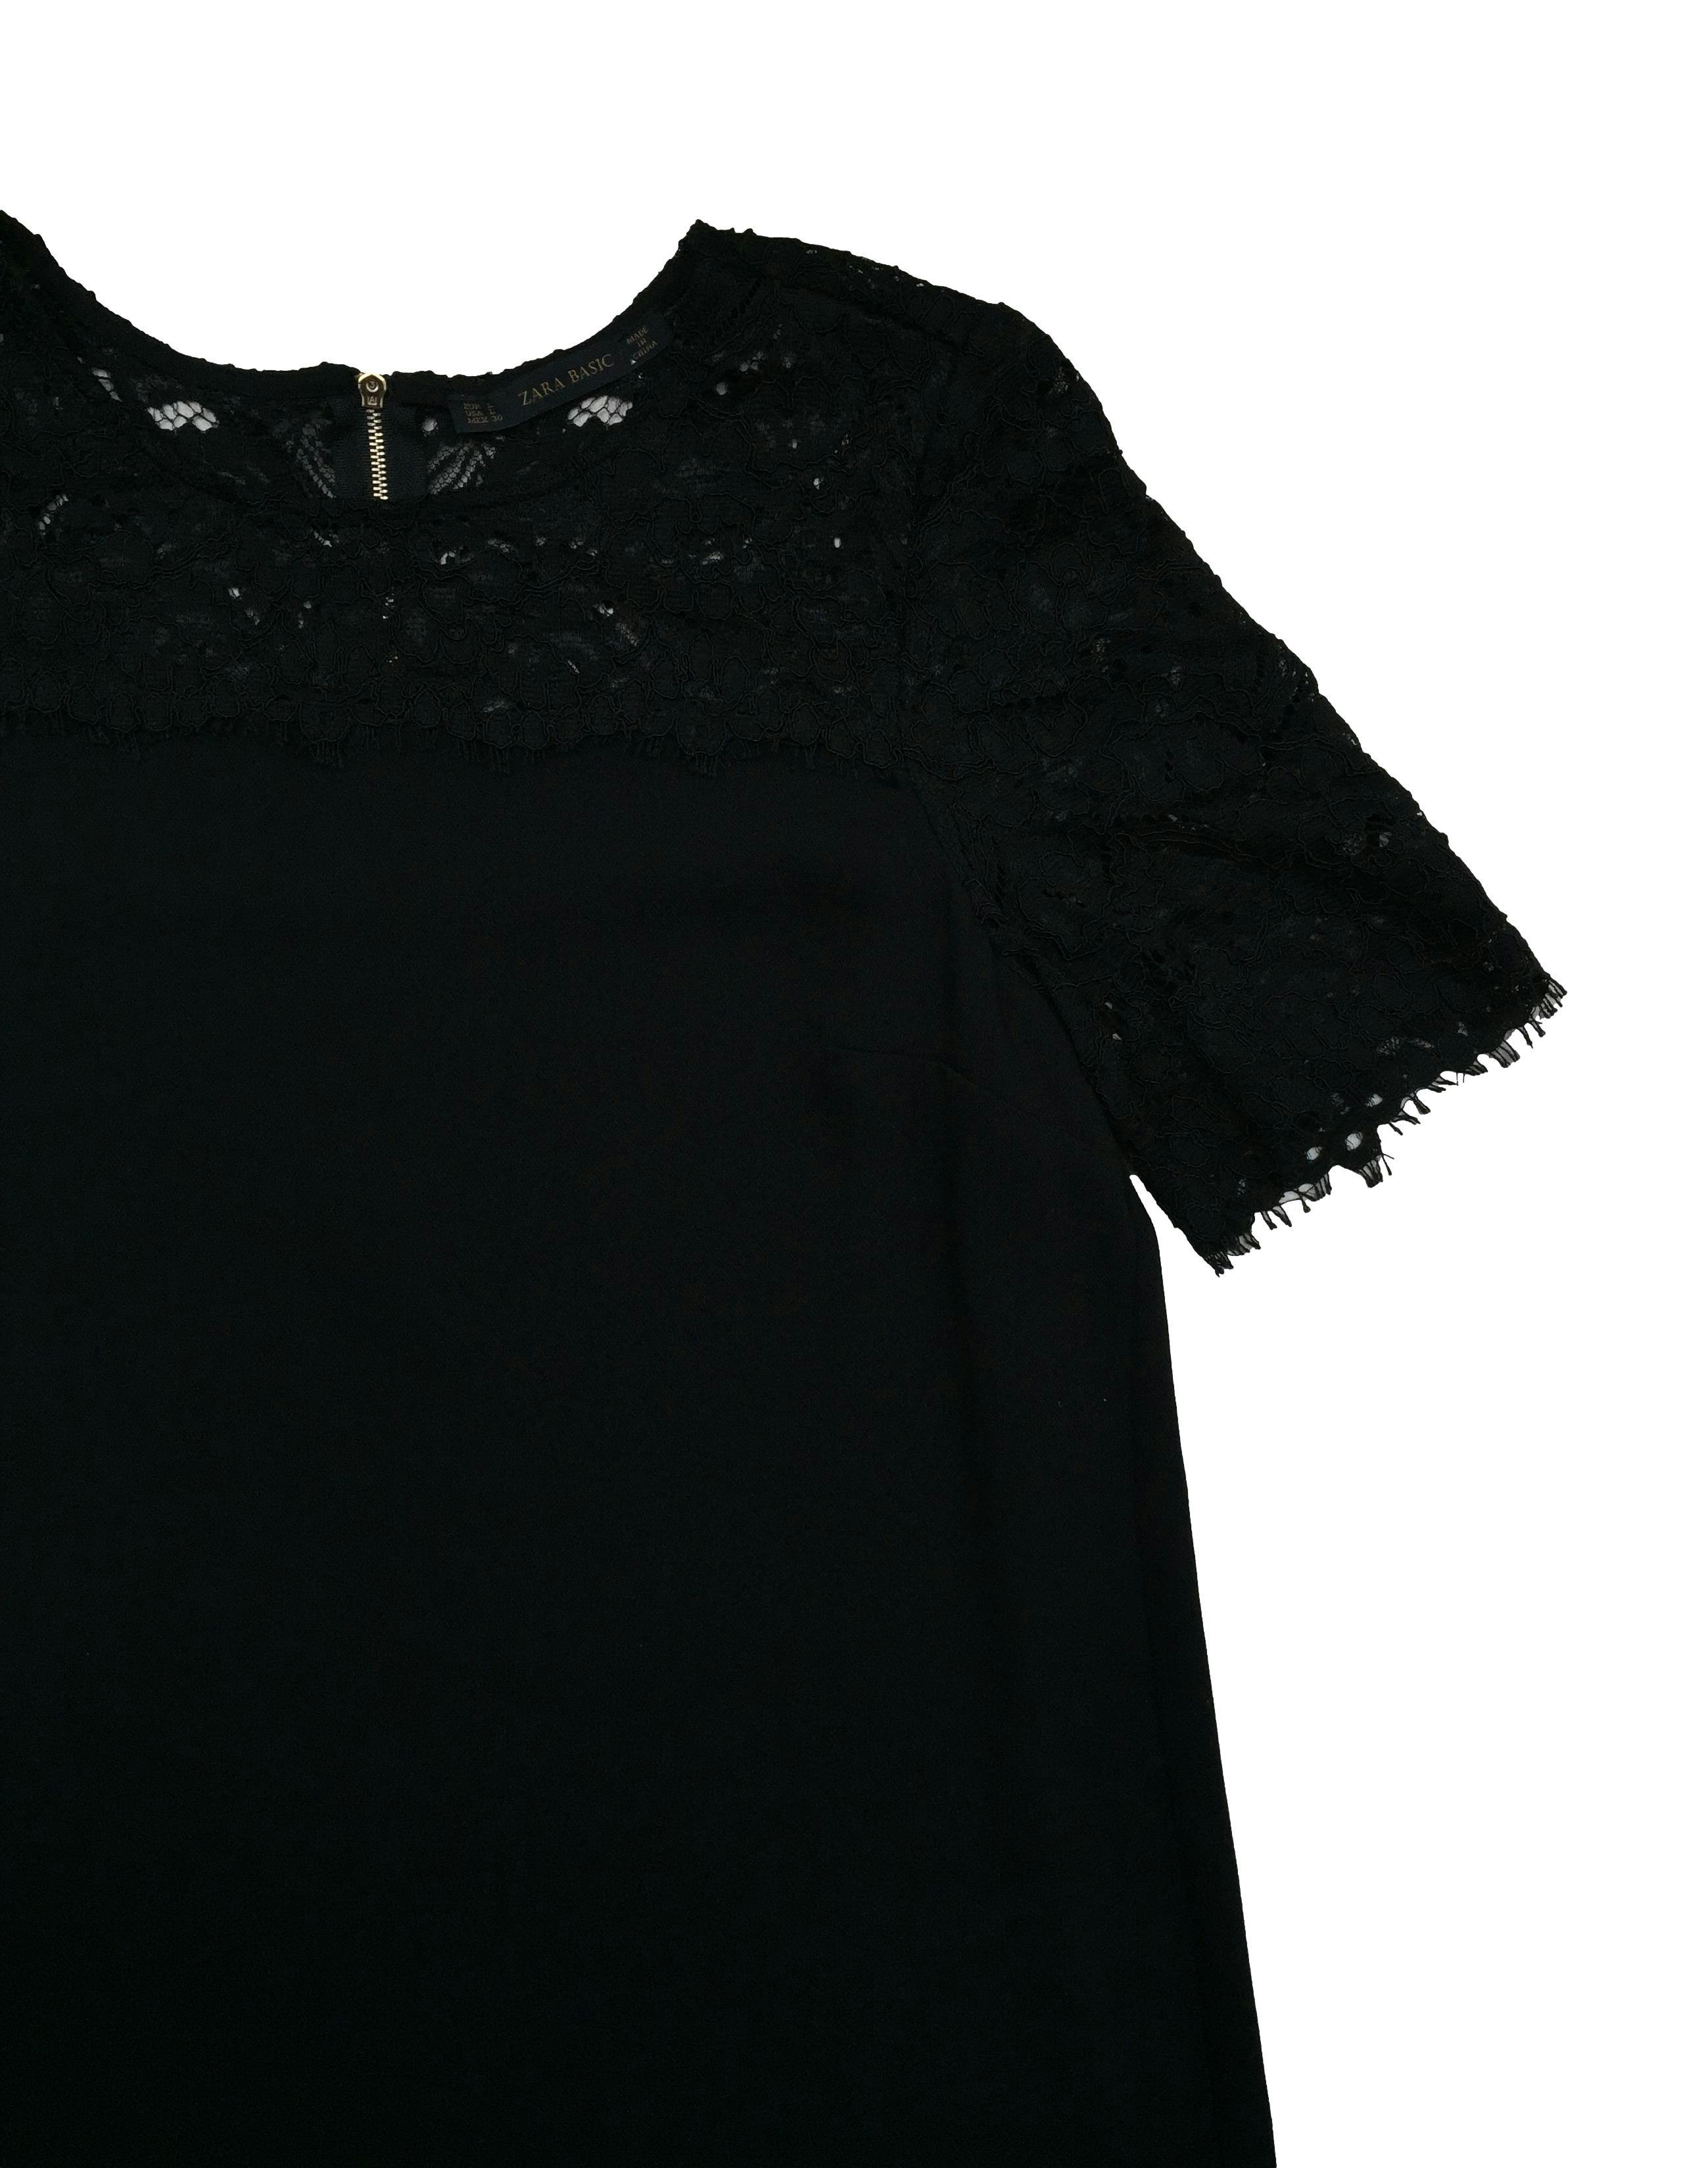 Vestido negro Zara con encaje en escote y mangas, cierre posterior metálico. Nuevo con etiqueta. Busto 102cm, Largo 94cm.